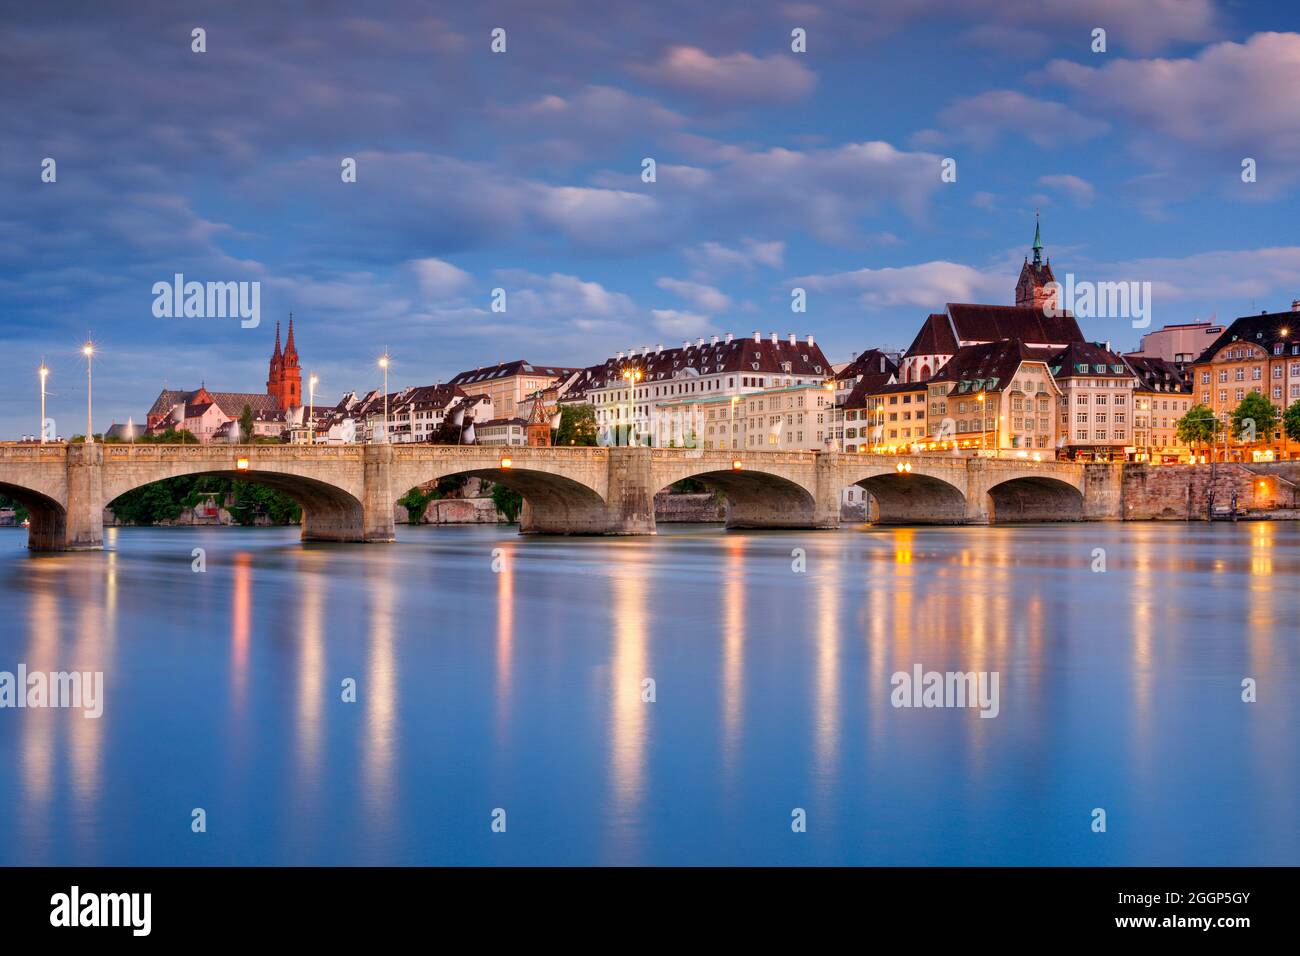 Blick auf die nächtlich beleuchtete Altstadt von Basel mit dem Basler Münster, der Martins Kirche, der Mittlere Brücke und dem Rhein Fluss Banque D'Images